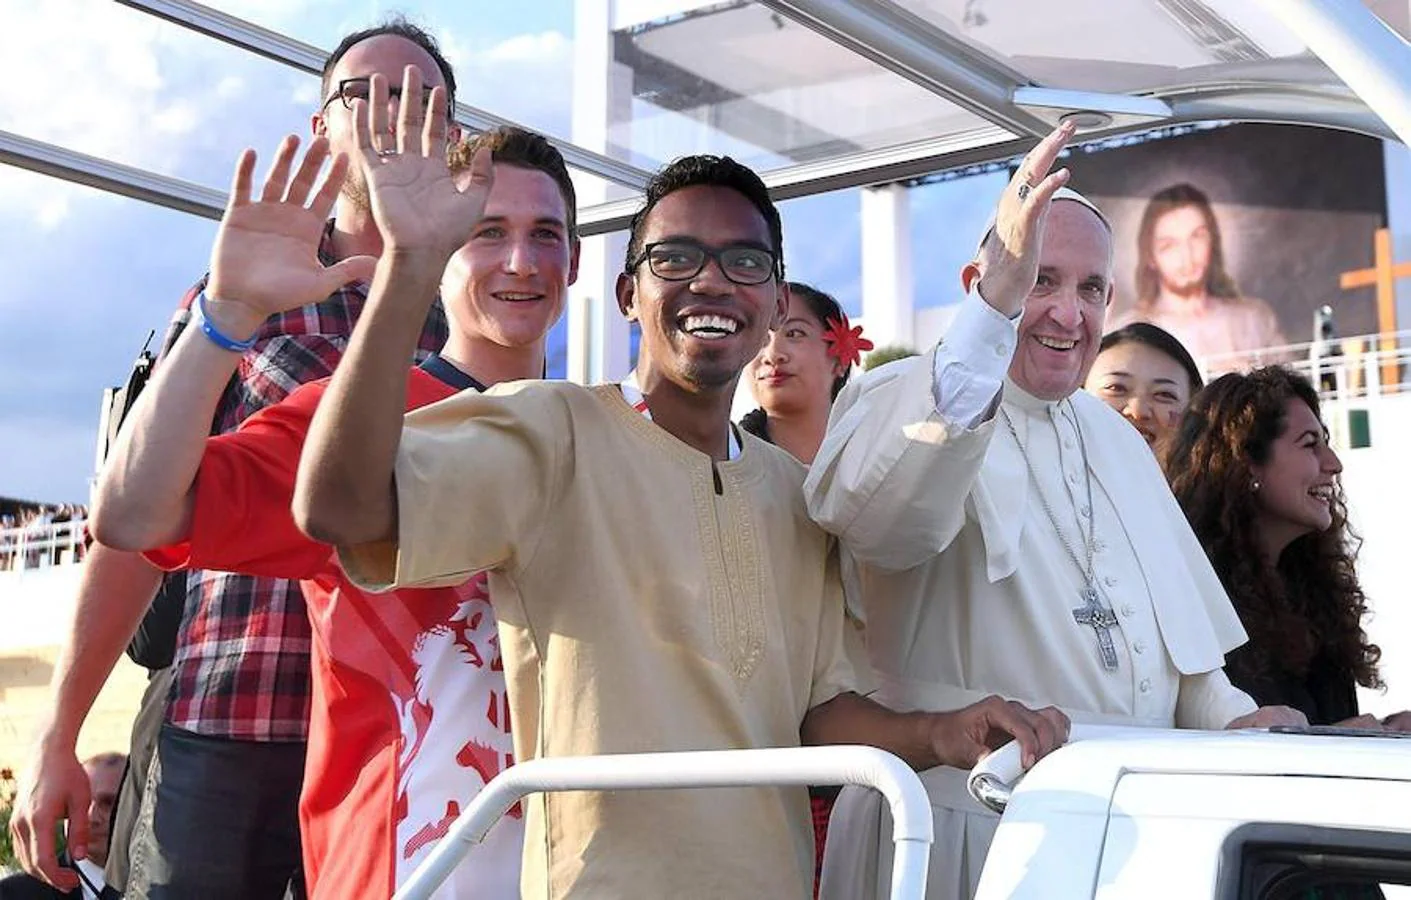 El Papa Francisco se reúne con los jóvenes para celebrar la vigilia en el campo de la Misericordia de Cracovia